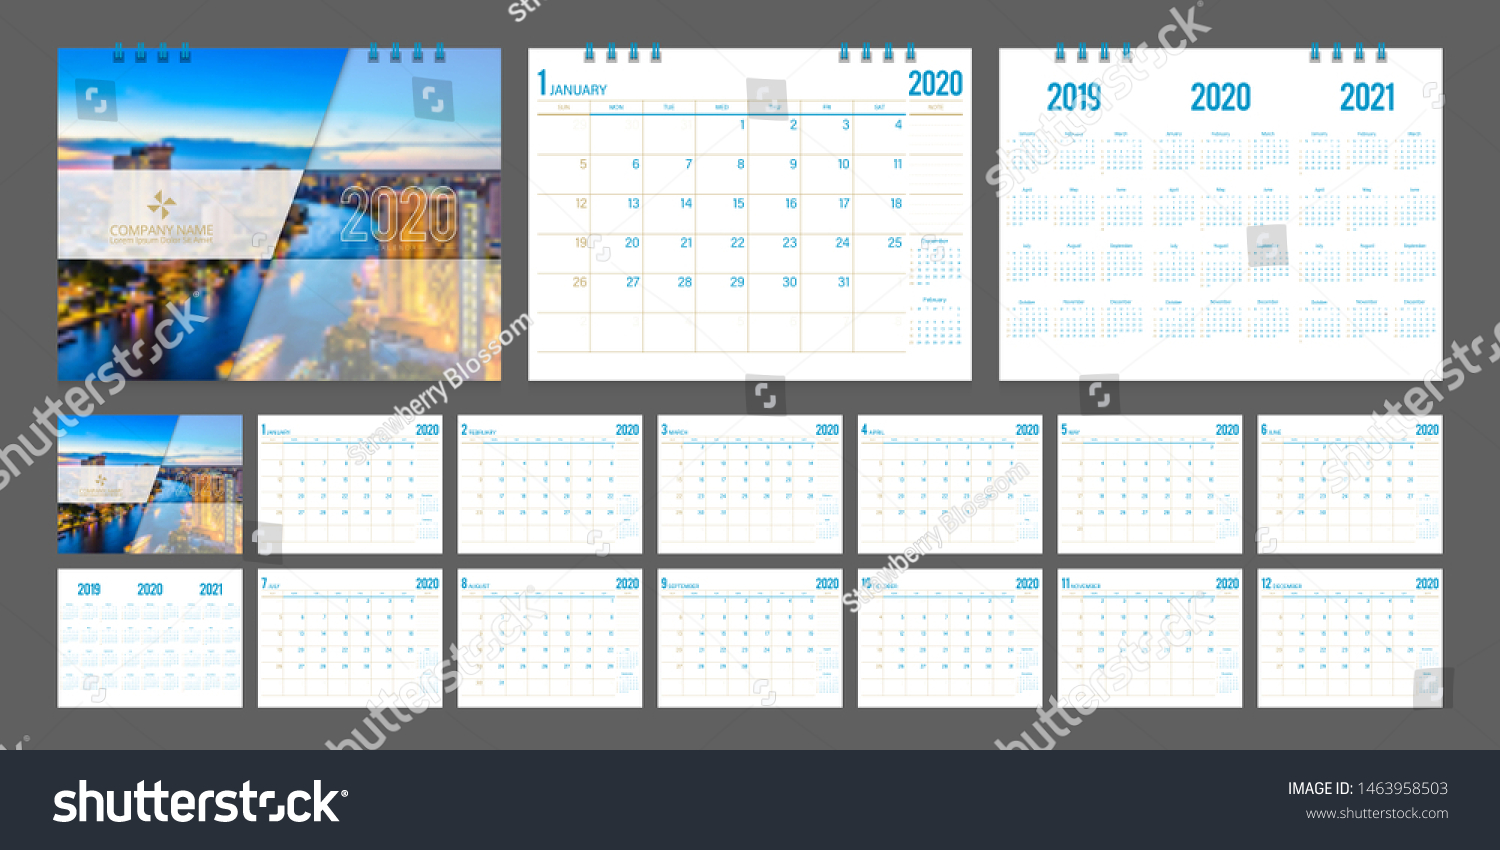 Calendar Week Template from image.shutterstock.com